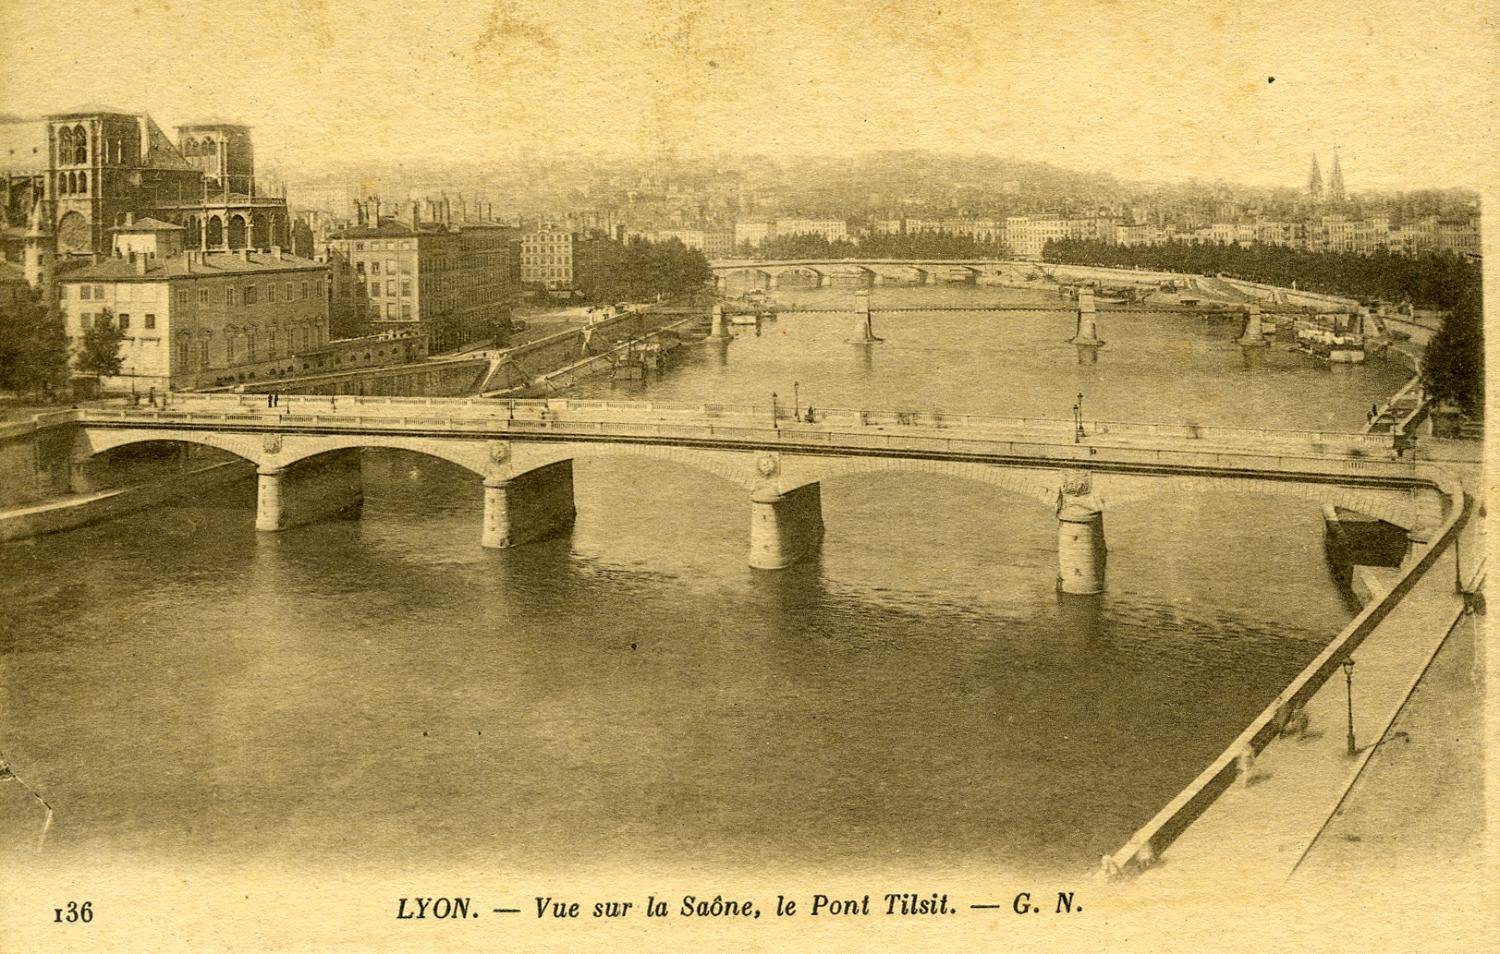 Lyon. - Vue sur la Saône, le Pont Tilsit.